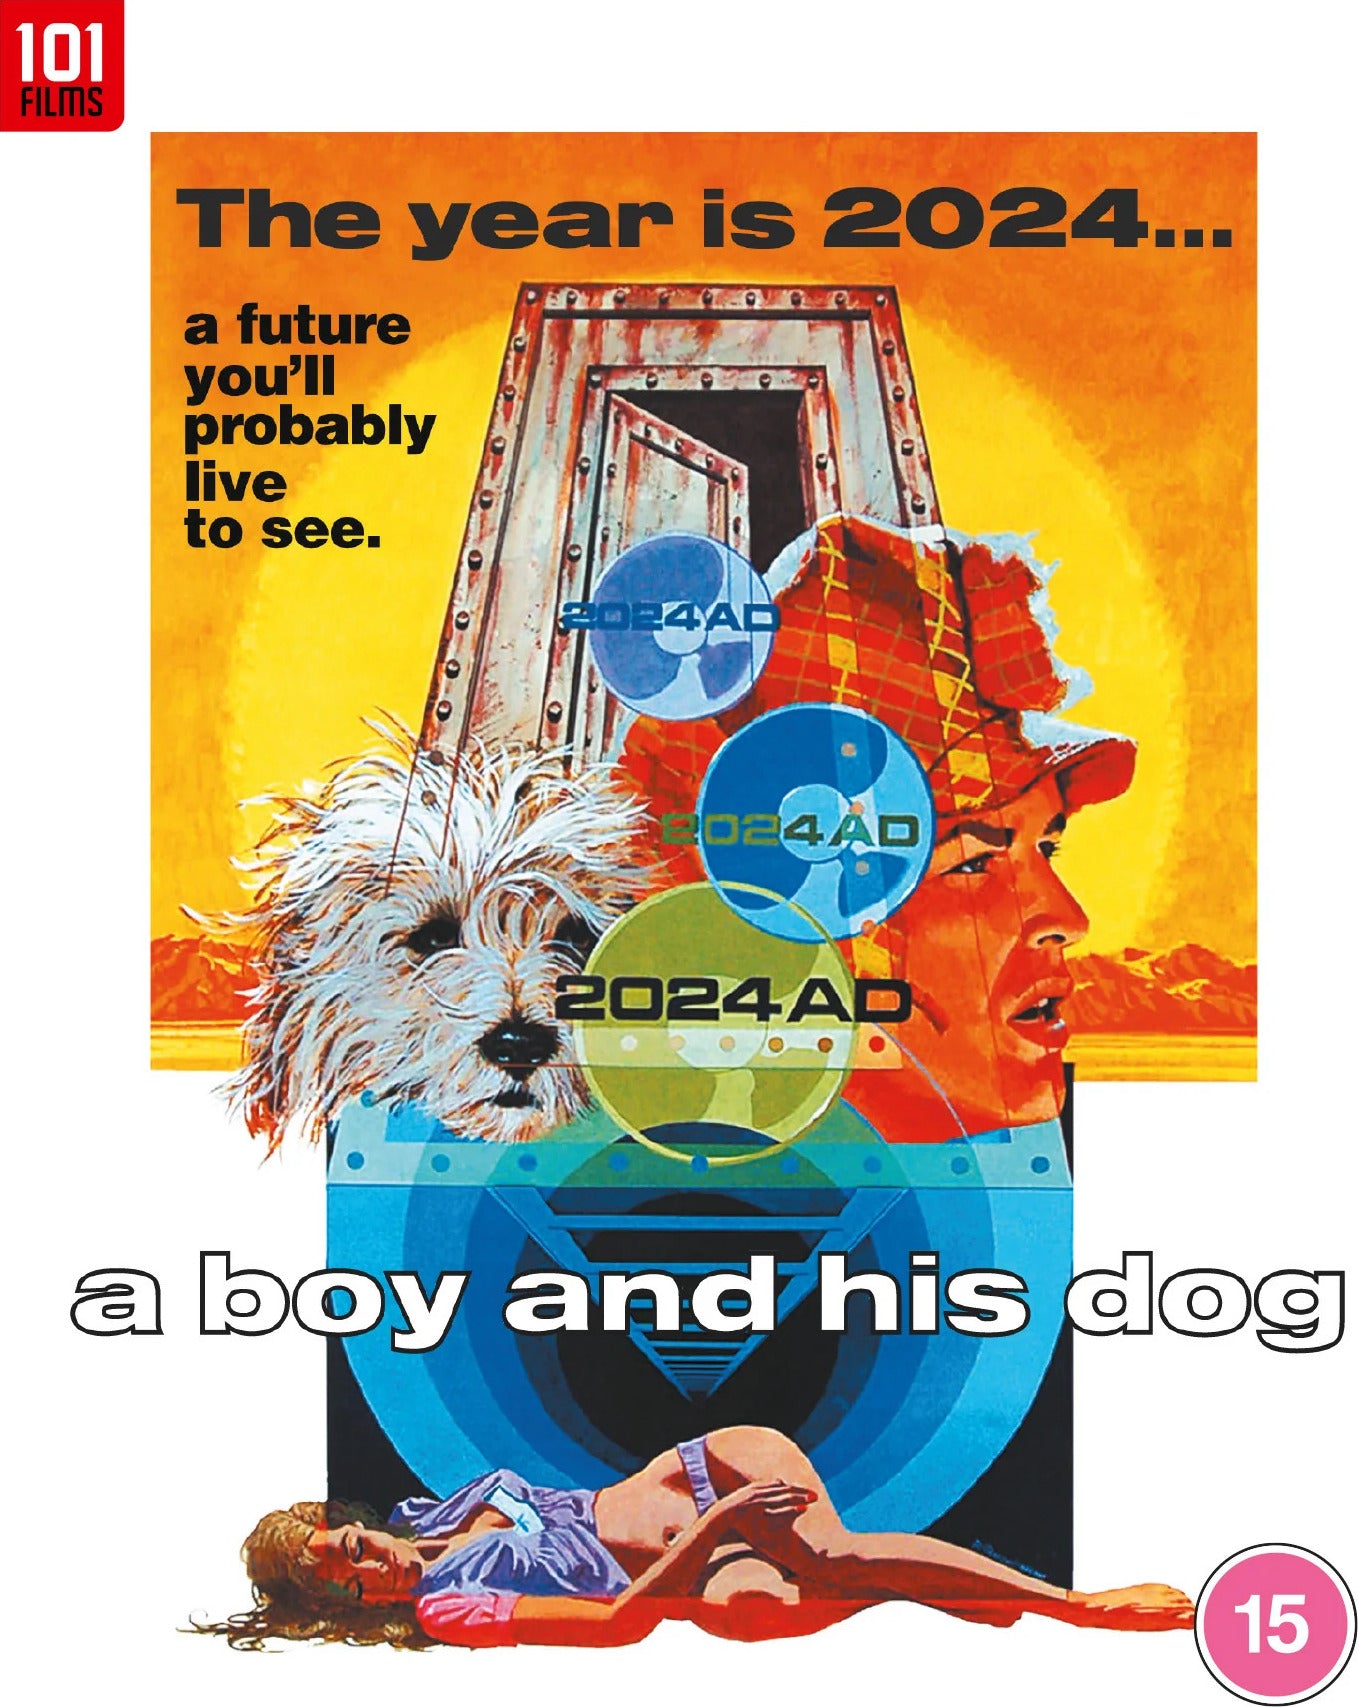 A BOY AND HIS DOG (REGION B IMPORT) BLU-RAY